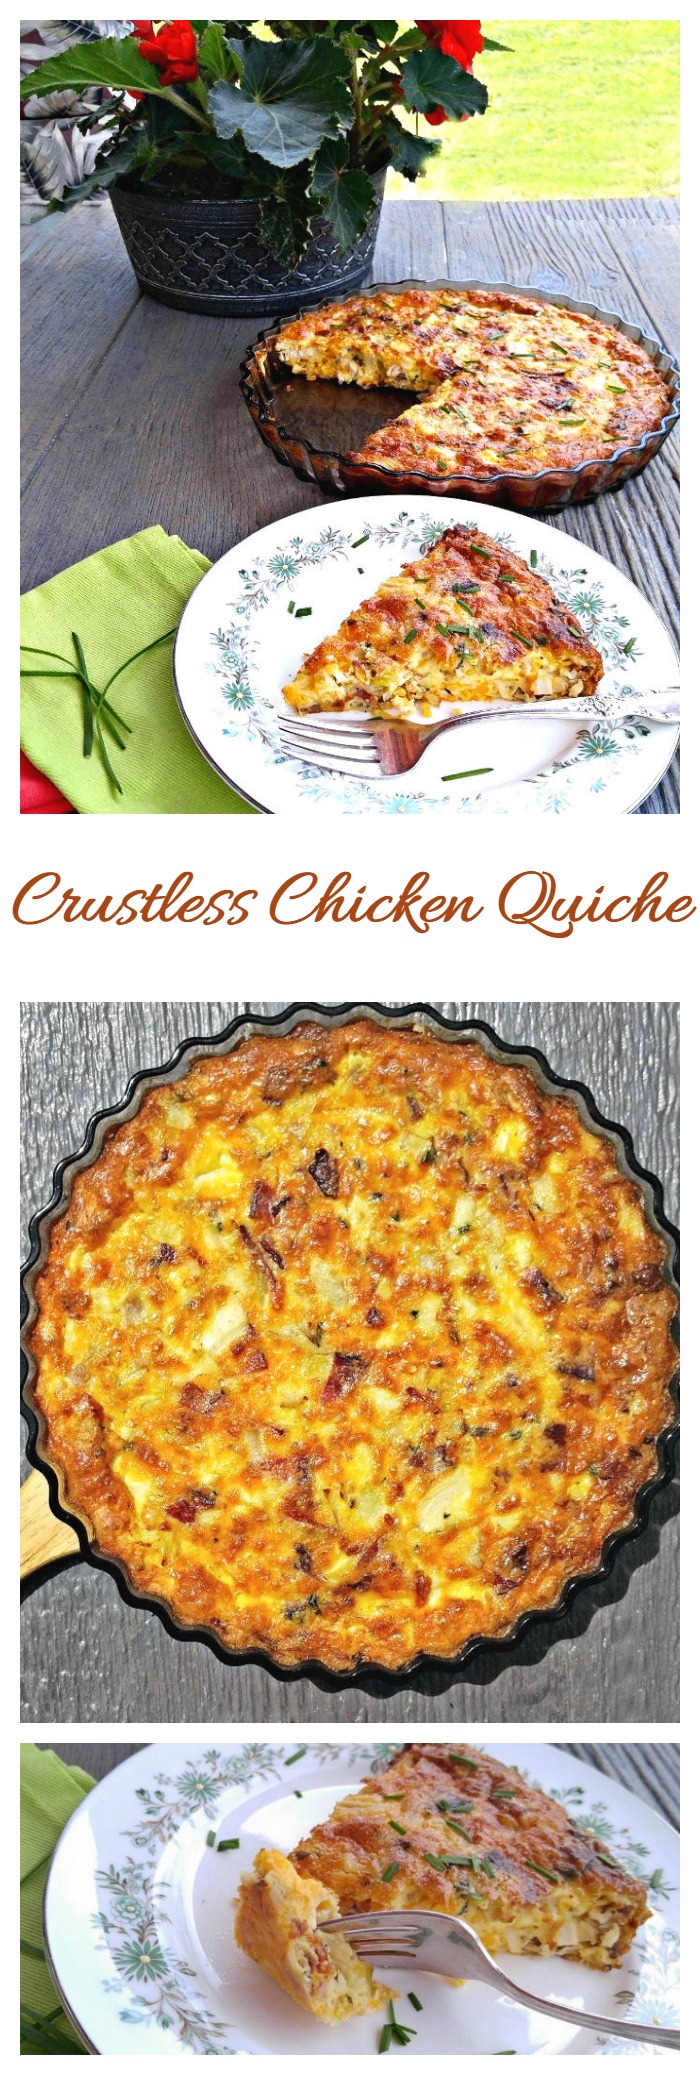 Crustless Chicken Quiche - ကျန်းမာရေးနှင့် ညီညွတ်ပြီး ပေါ့ပါးသော နံနက်စာ ချက်ပြုတ်နည်း